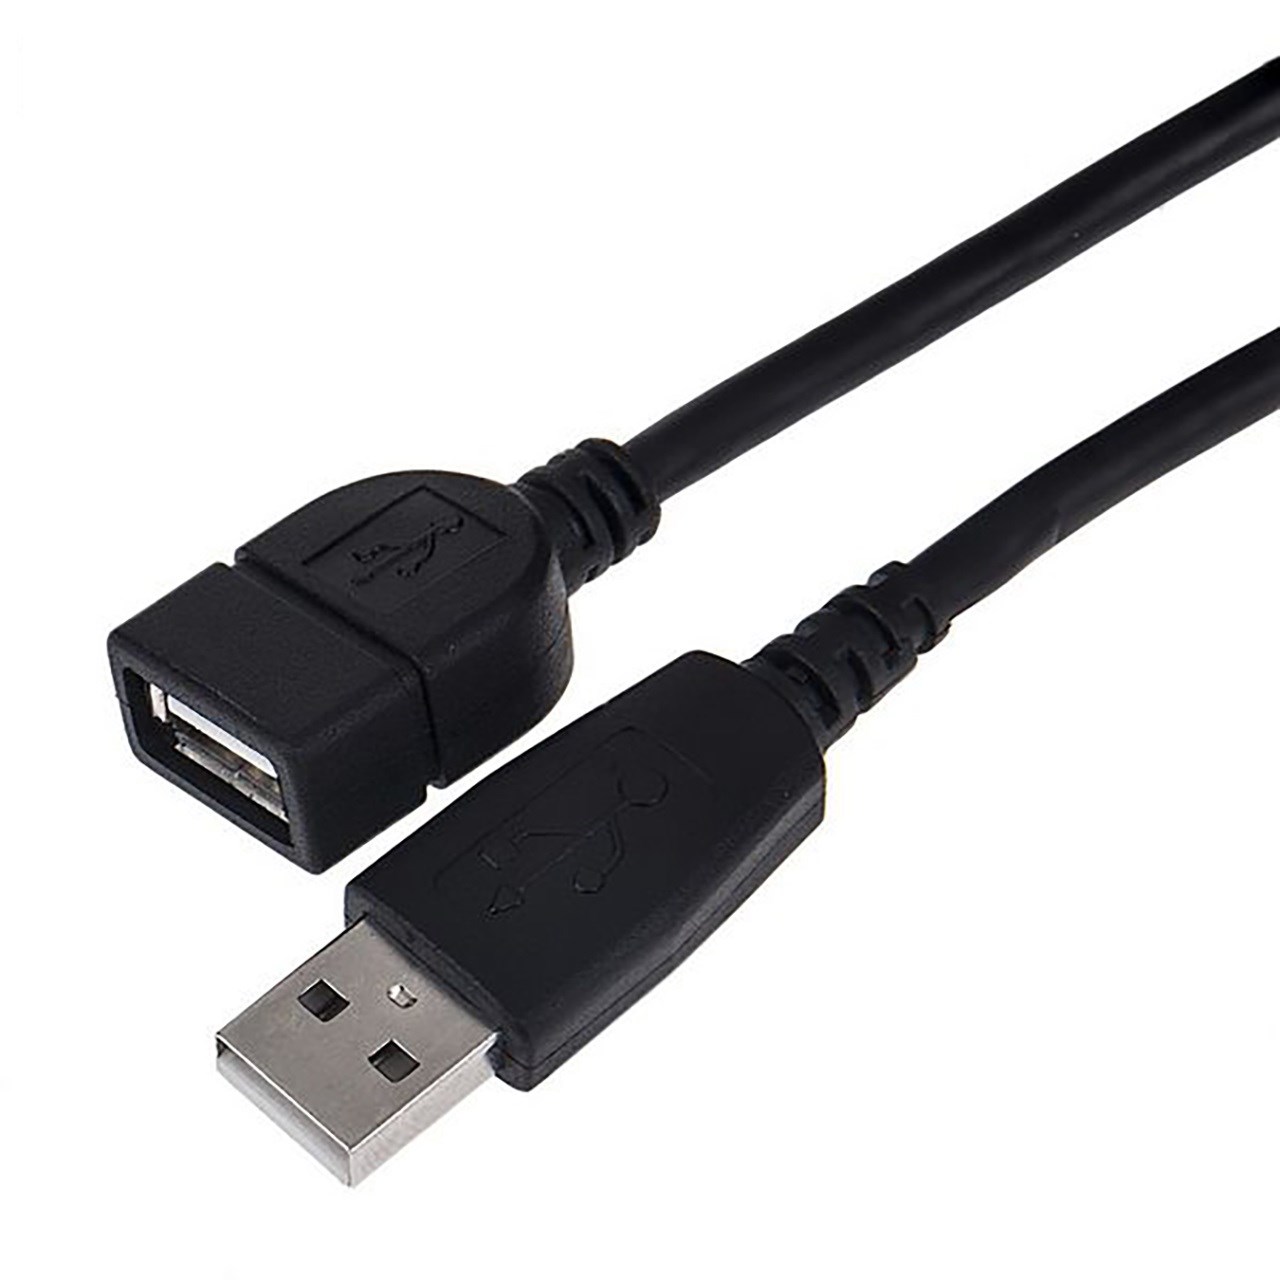 کابل افزایش طول USB 2.0 یوسی تک مدل161130  به طول 1.5 متر                     غیر اصل